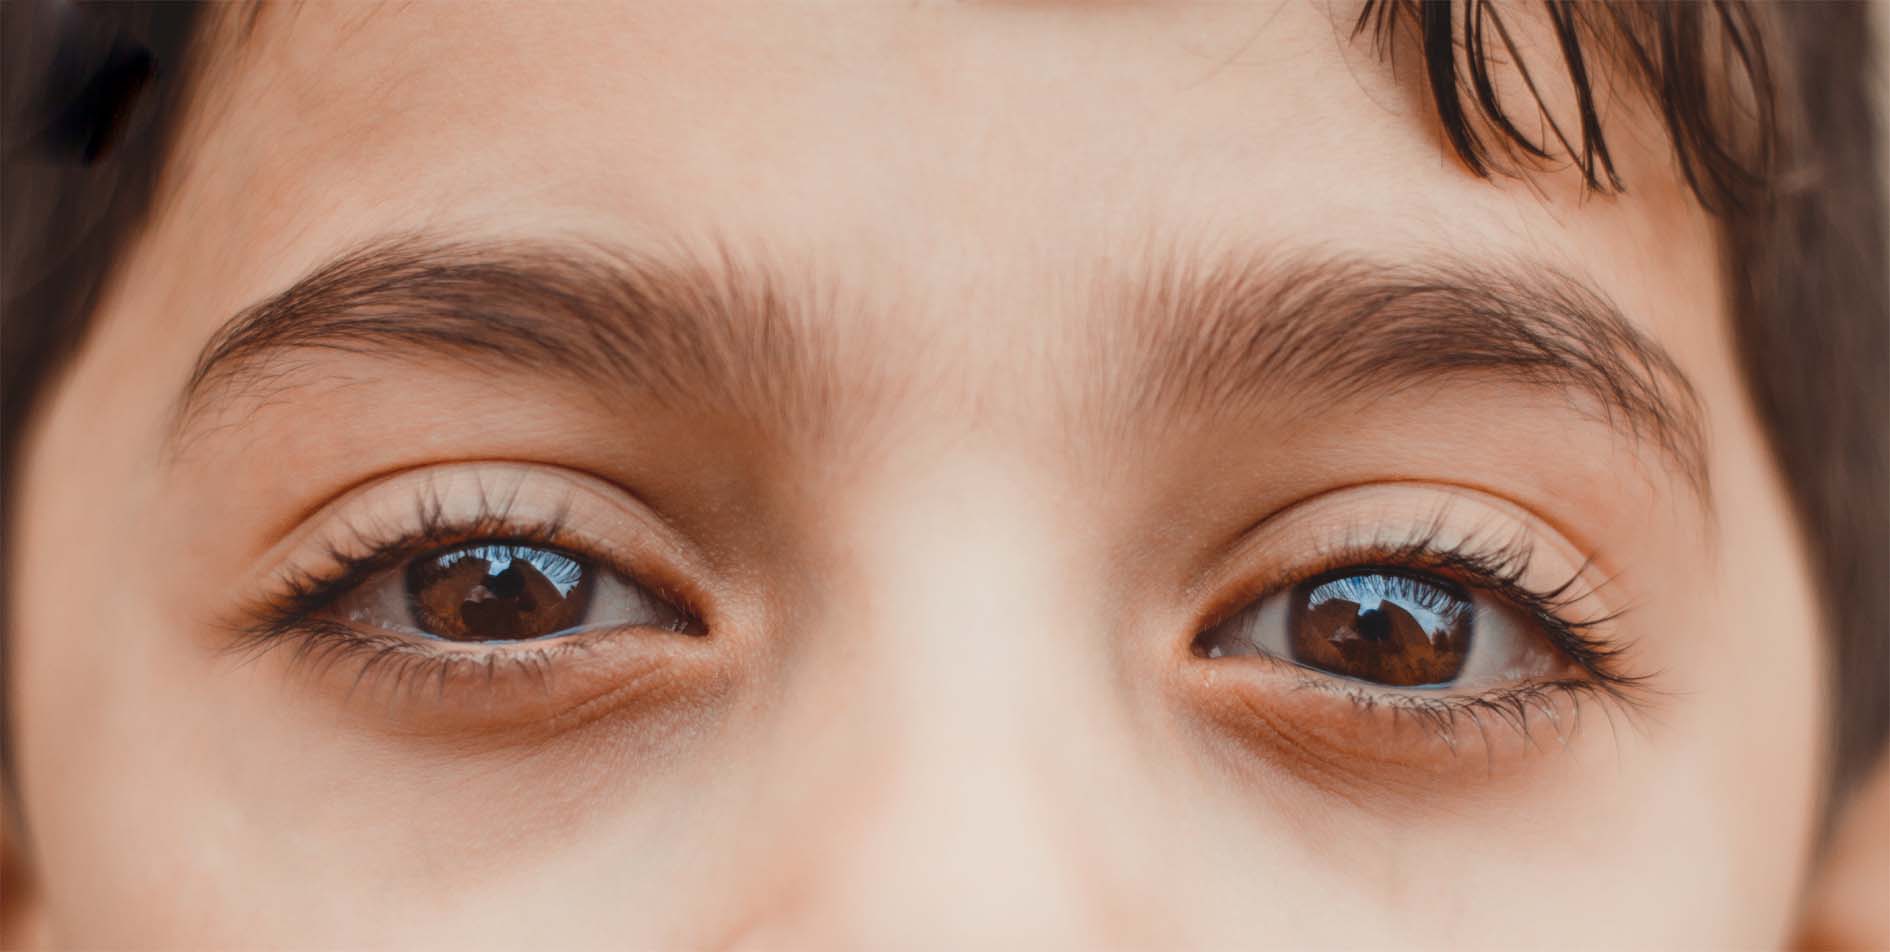 Photo of आंखें बताती हैं व्यक्ति का स्वभाव, जानिए क्या कहता है आपका…